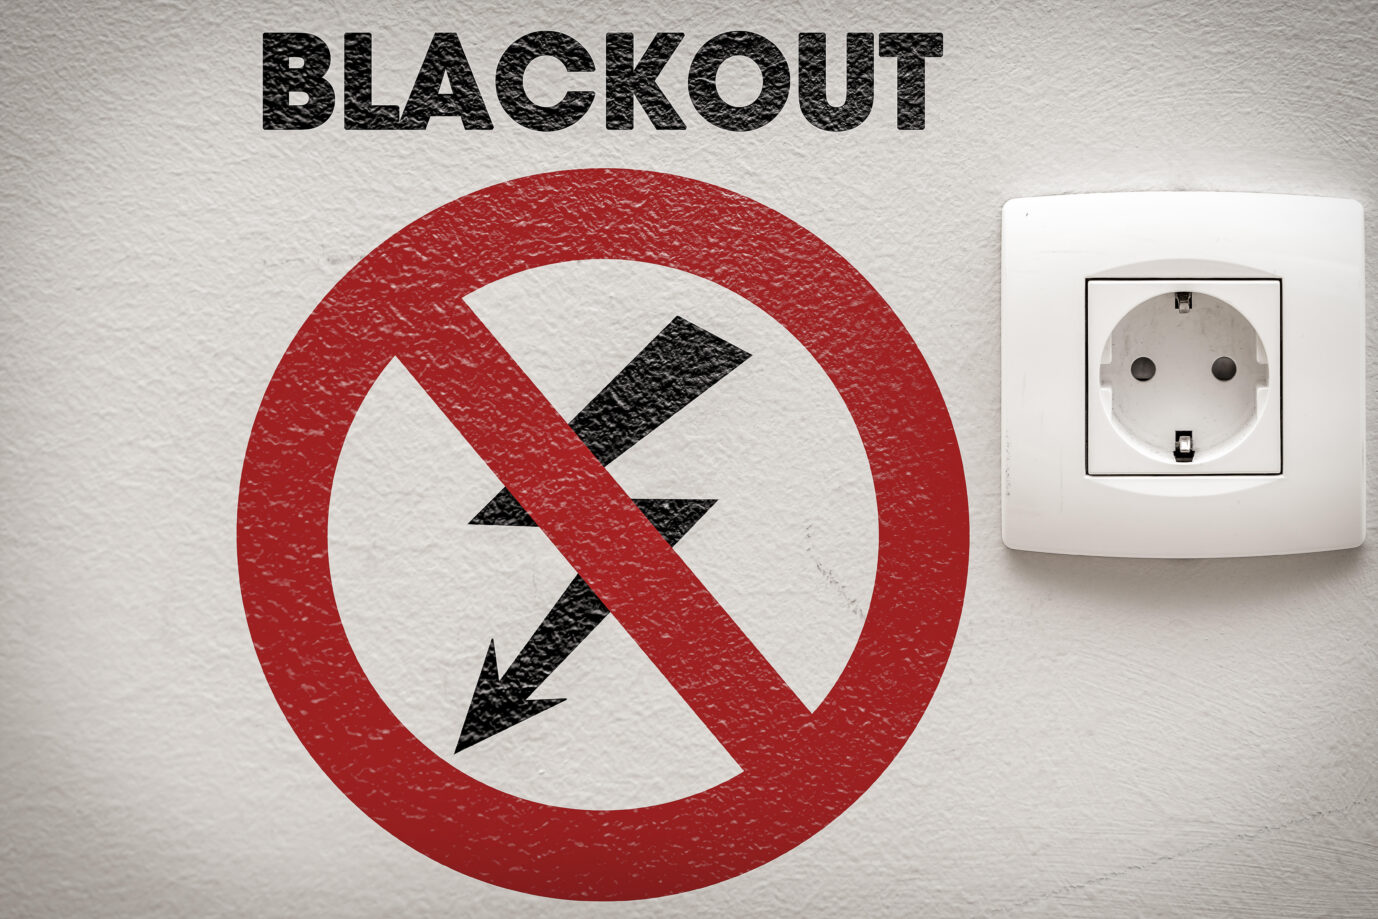 Blackout, Stromausfall, Steckdose an einer Wand mit der Aufschrift: Blackout. Stromversorgung unterbrochen, kein Strom